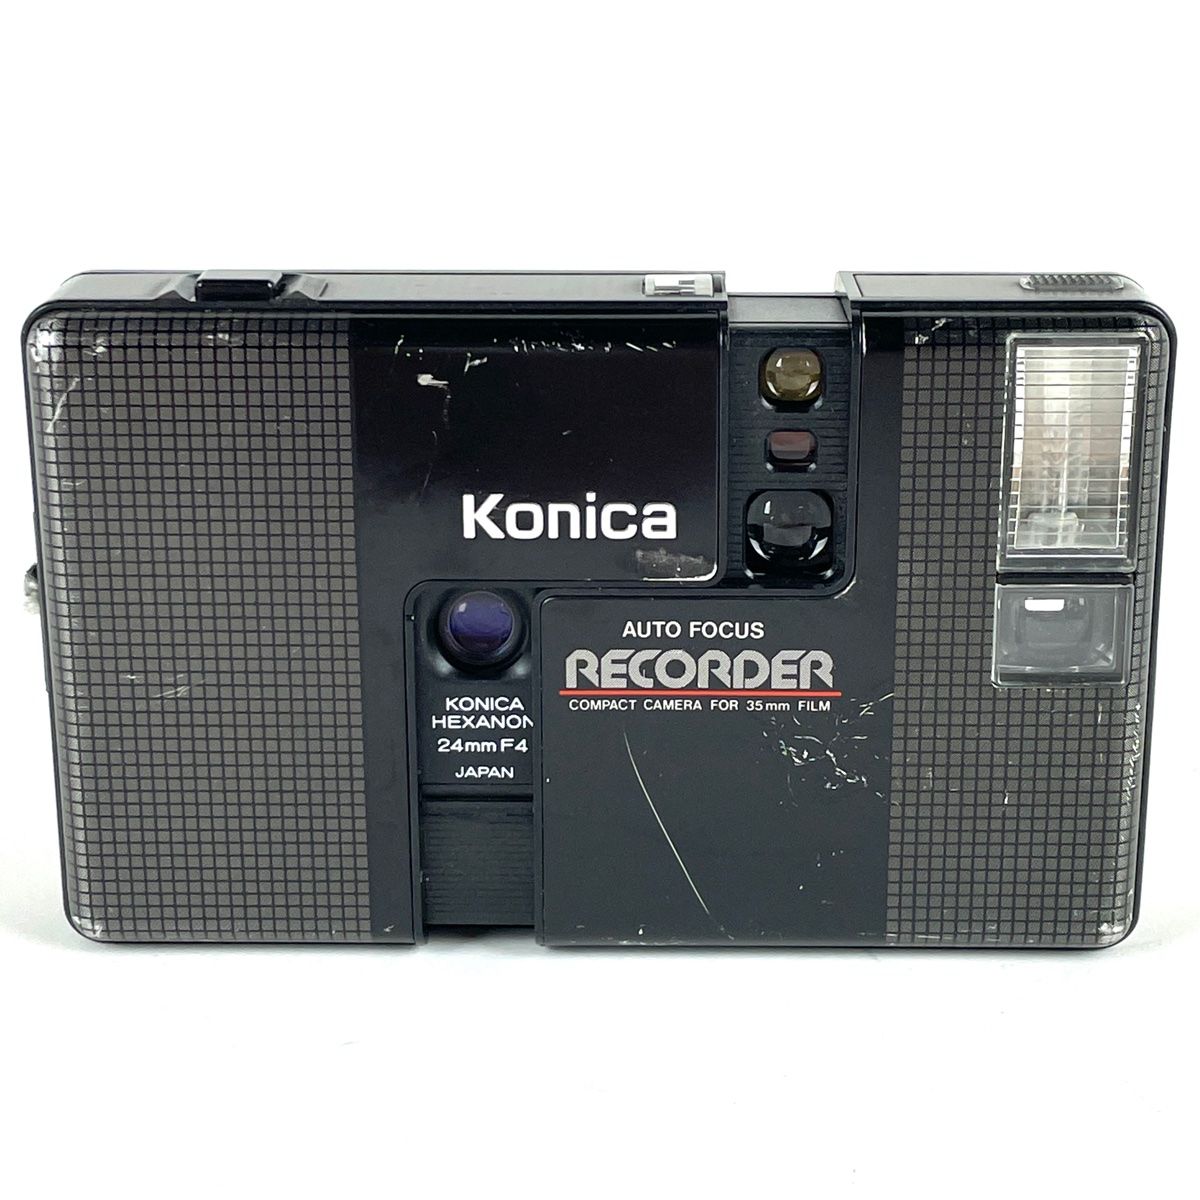 ☆コニカ Konica AUTO FOCUS RECORDER HEXANON 24mm F4 ブラック 